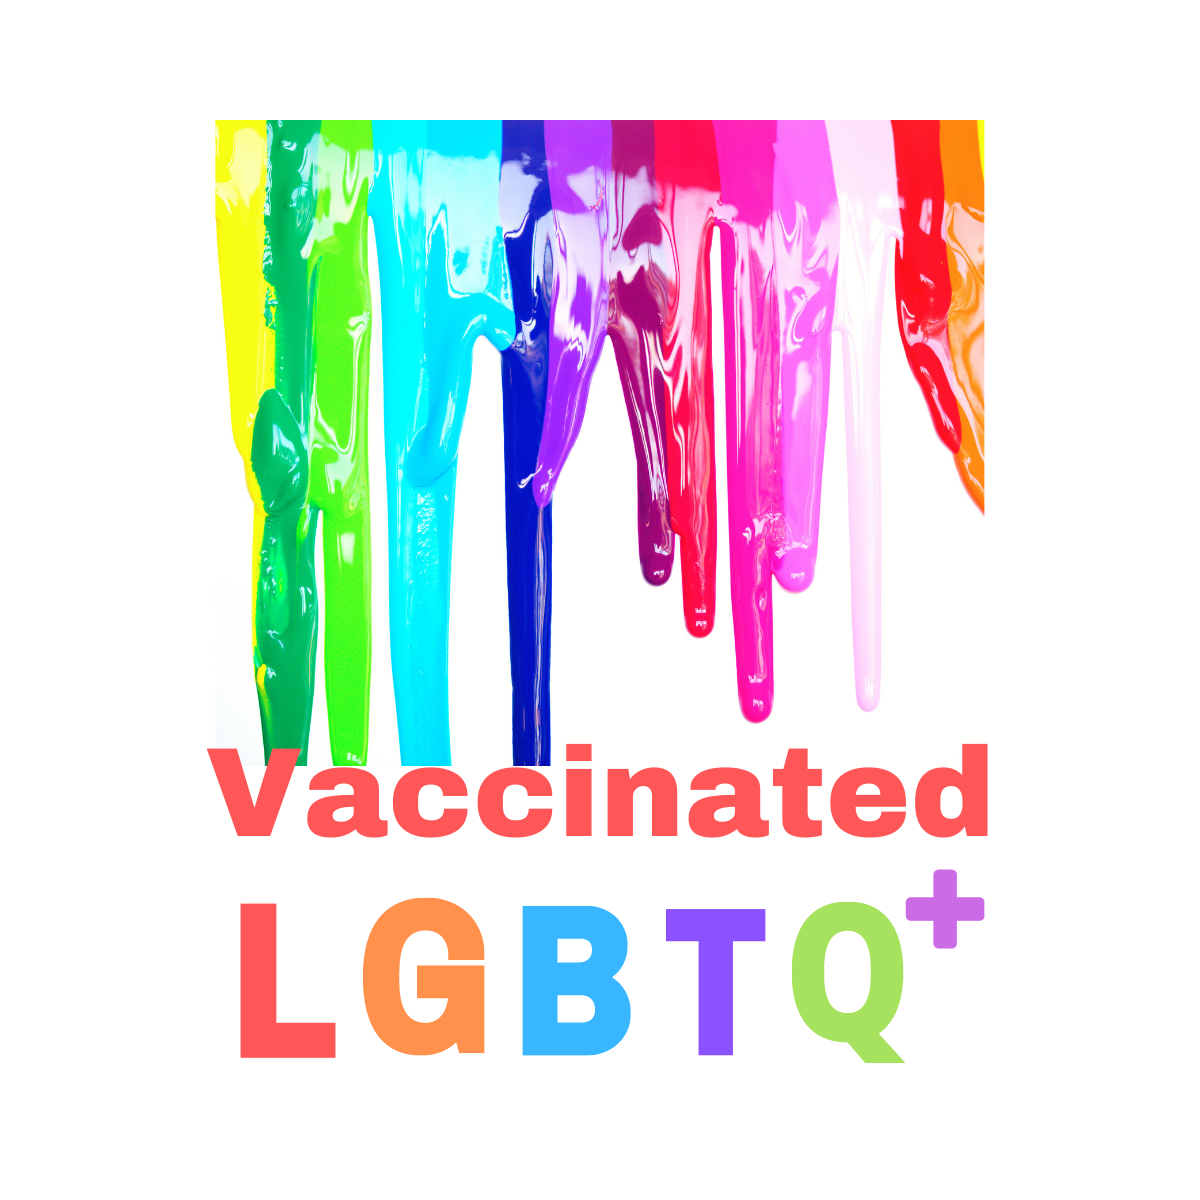 LGBTQ+ Vaccinated Square Button/Pin